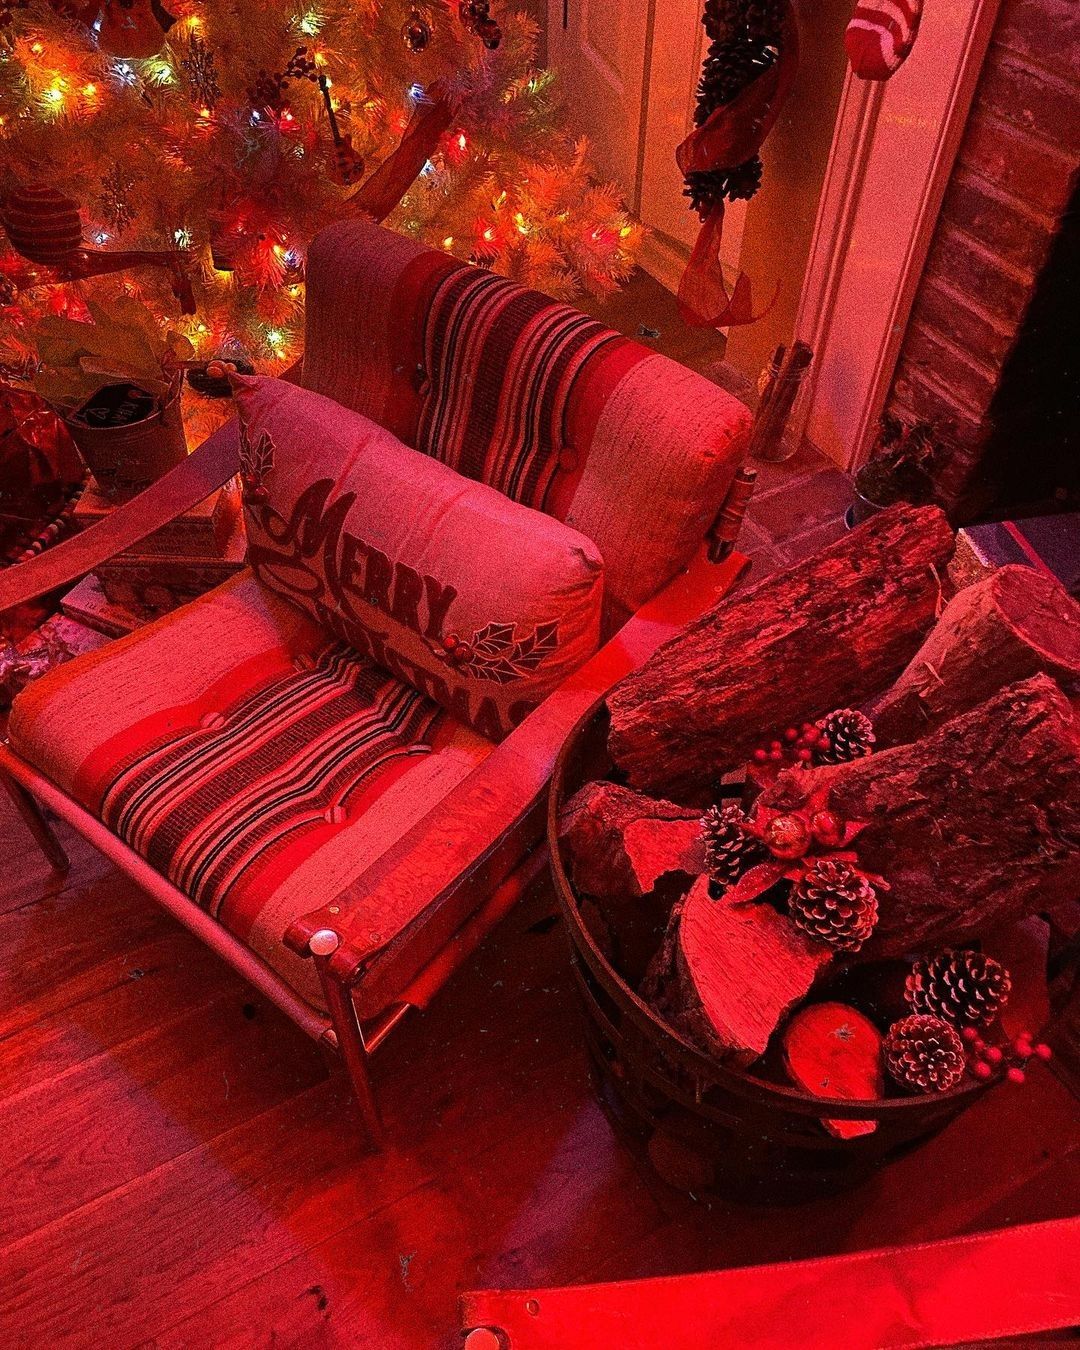 Le decorazioni per Natale di Gigi Hadid - Neomag.